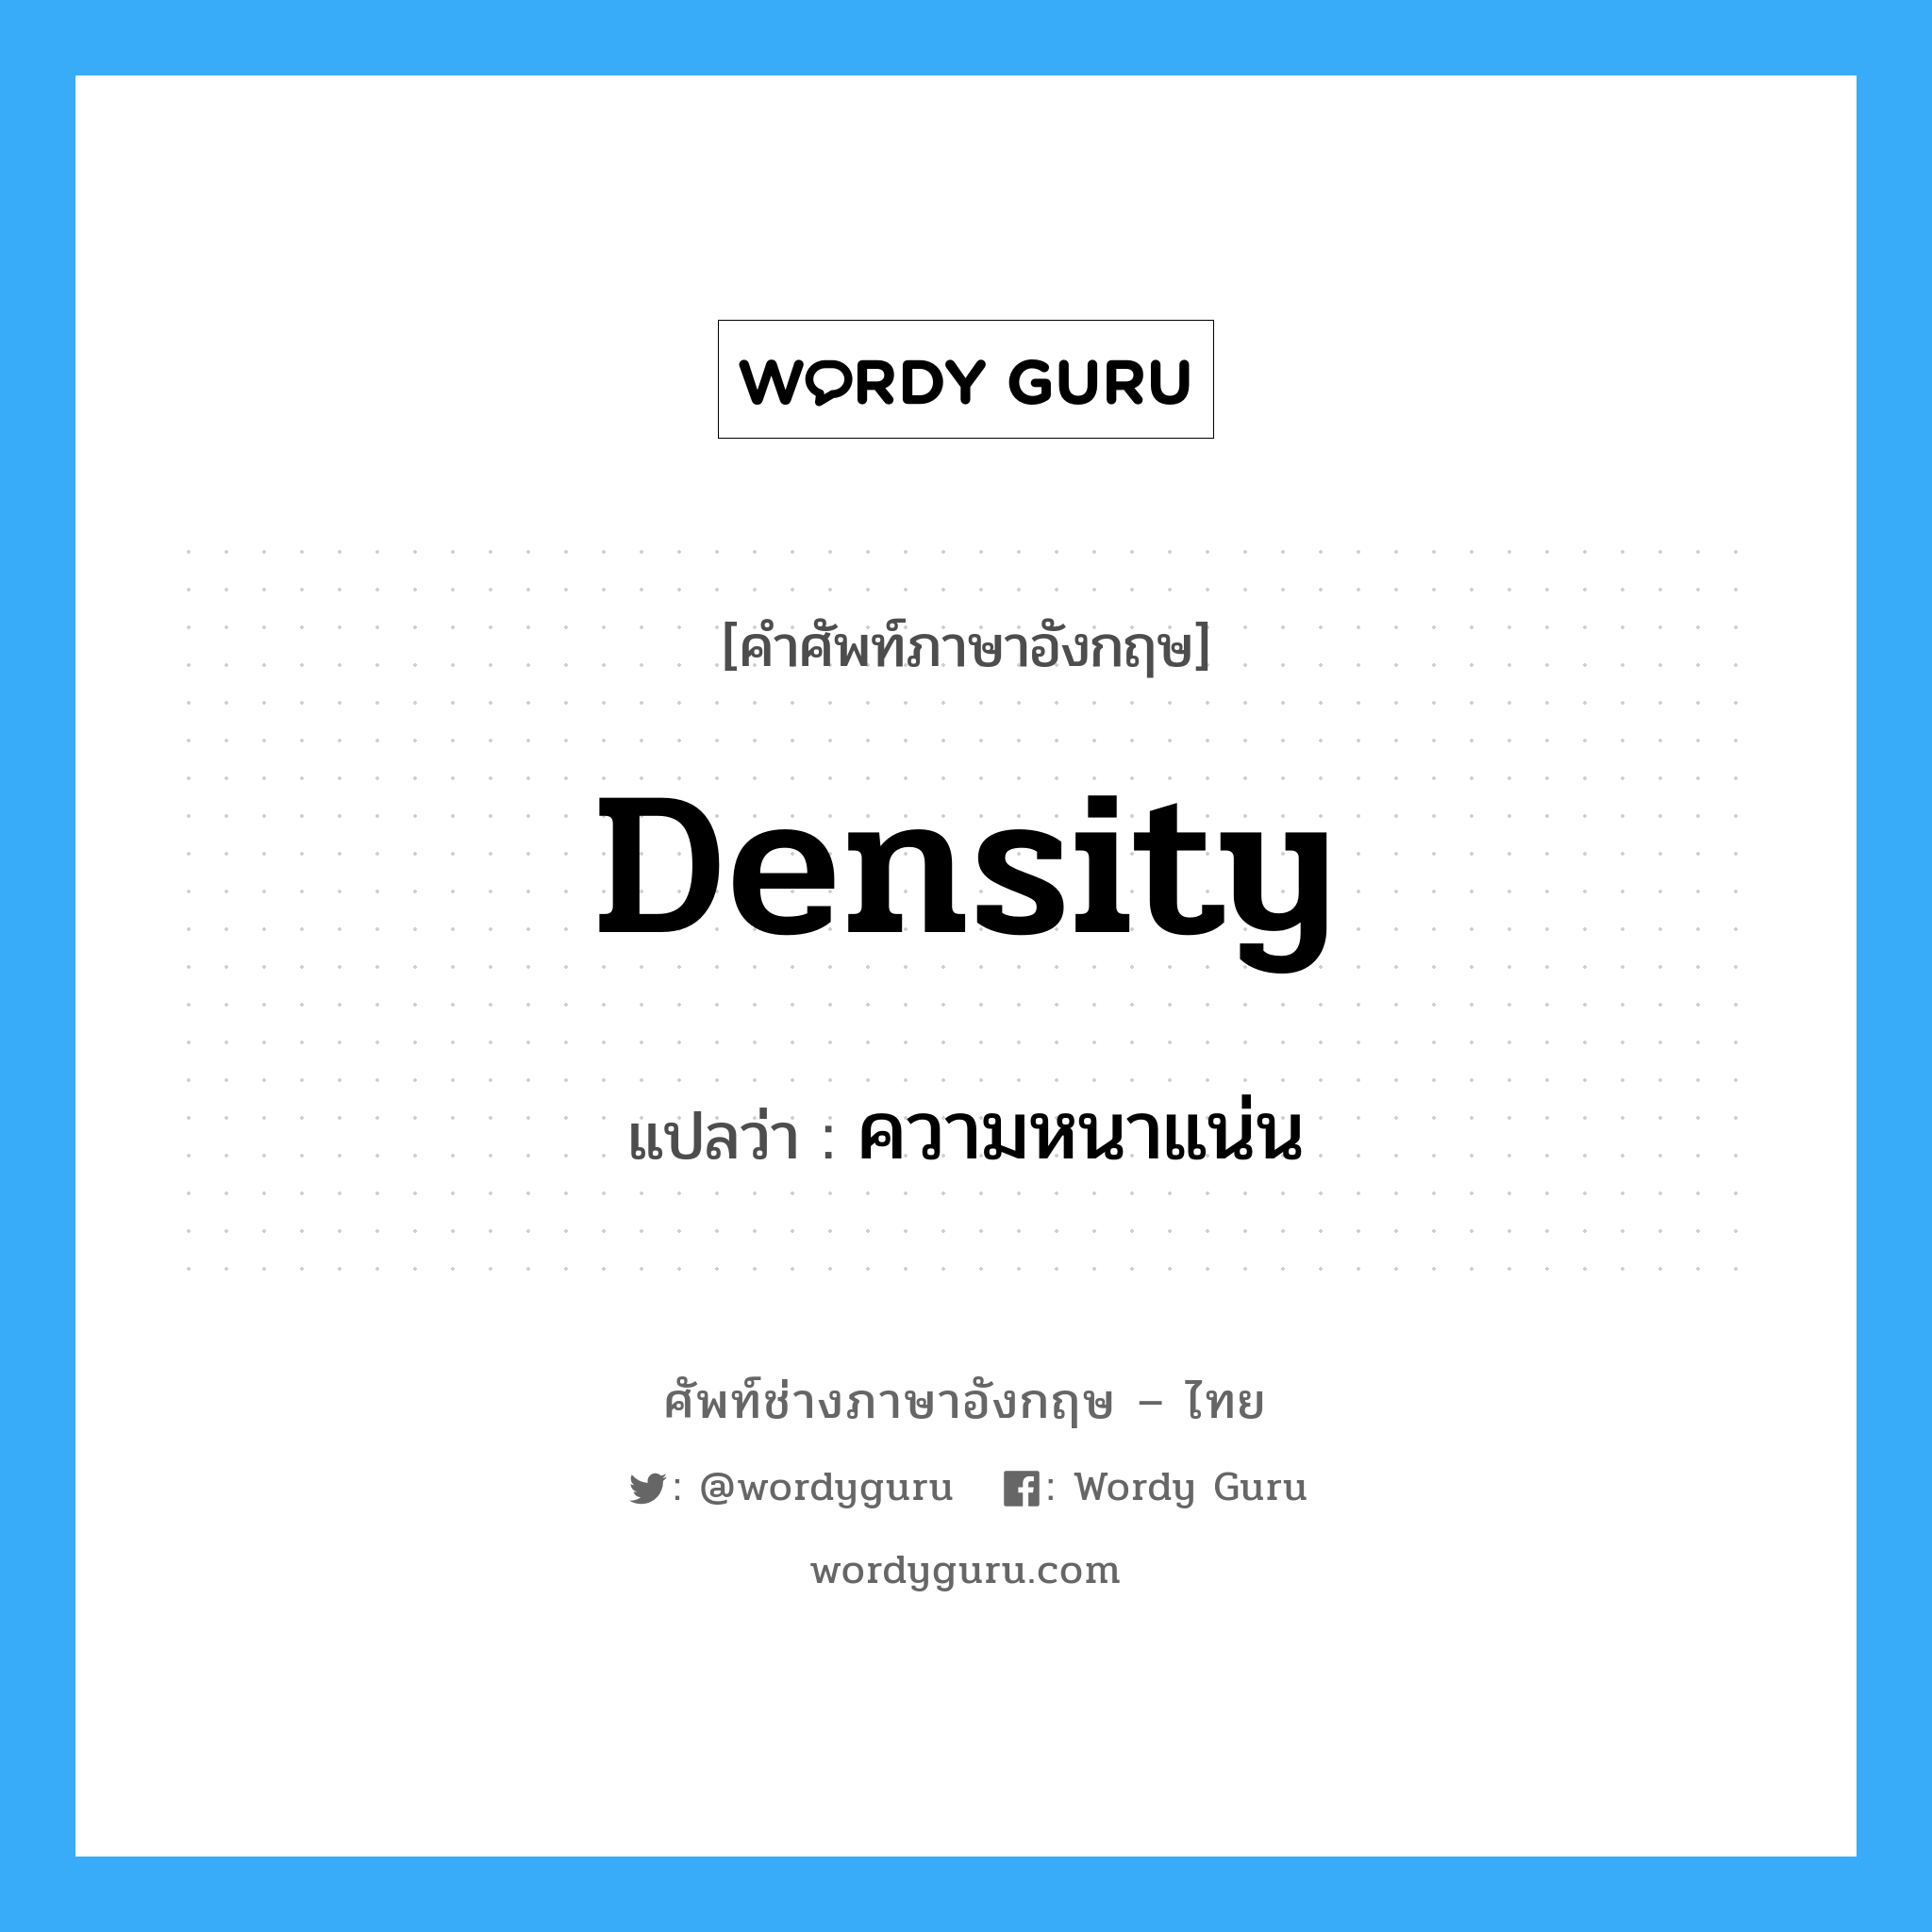 ความหนาแน่น ภาษาอังกฤษ?, คำศัพท์ช่างภาษาอังกฤษ - ไทย ความหนาแน่น คำศัพท์ภาษาอังกฤษ ความหนาแน่น แปลว่า density